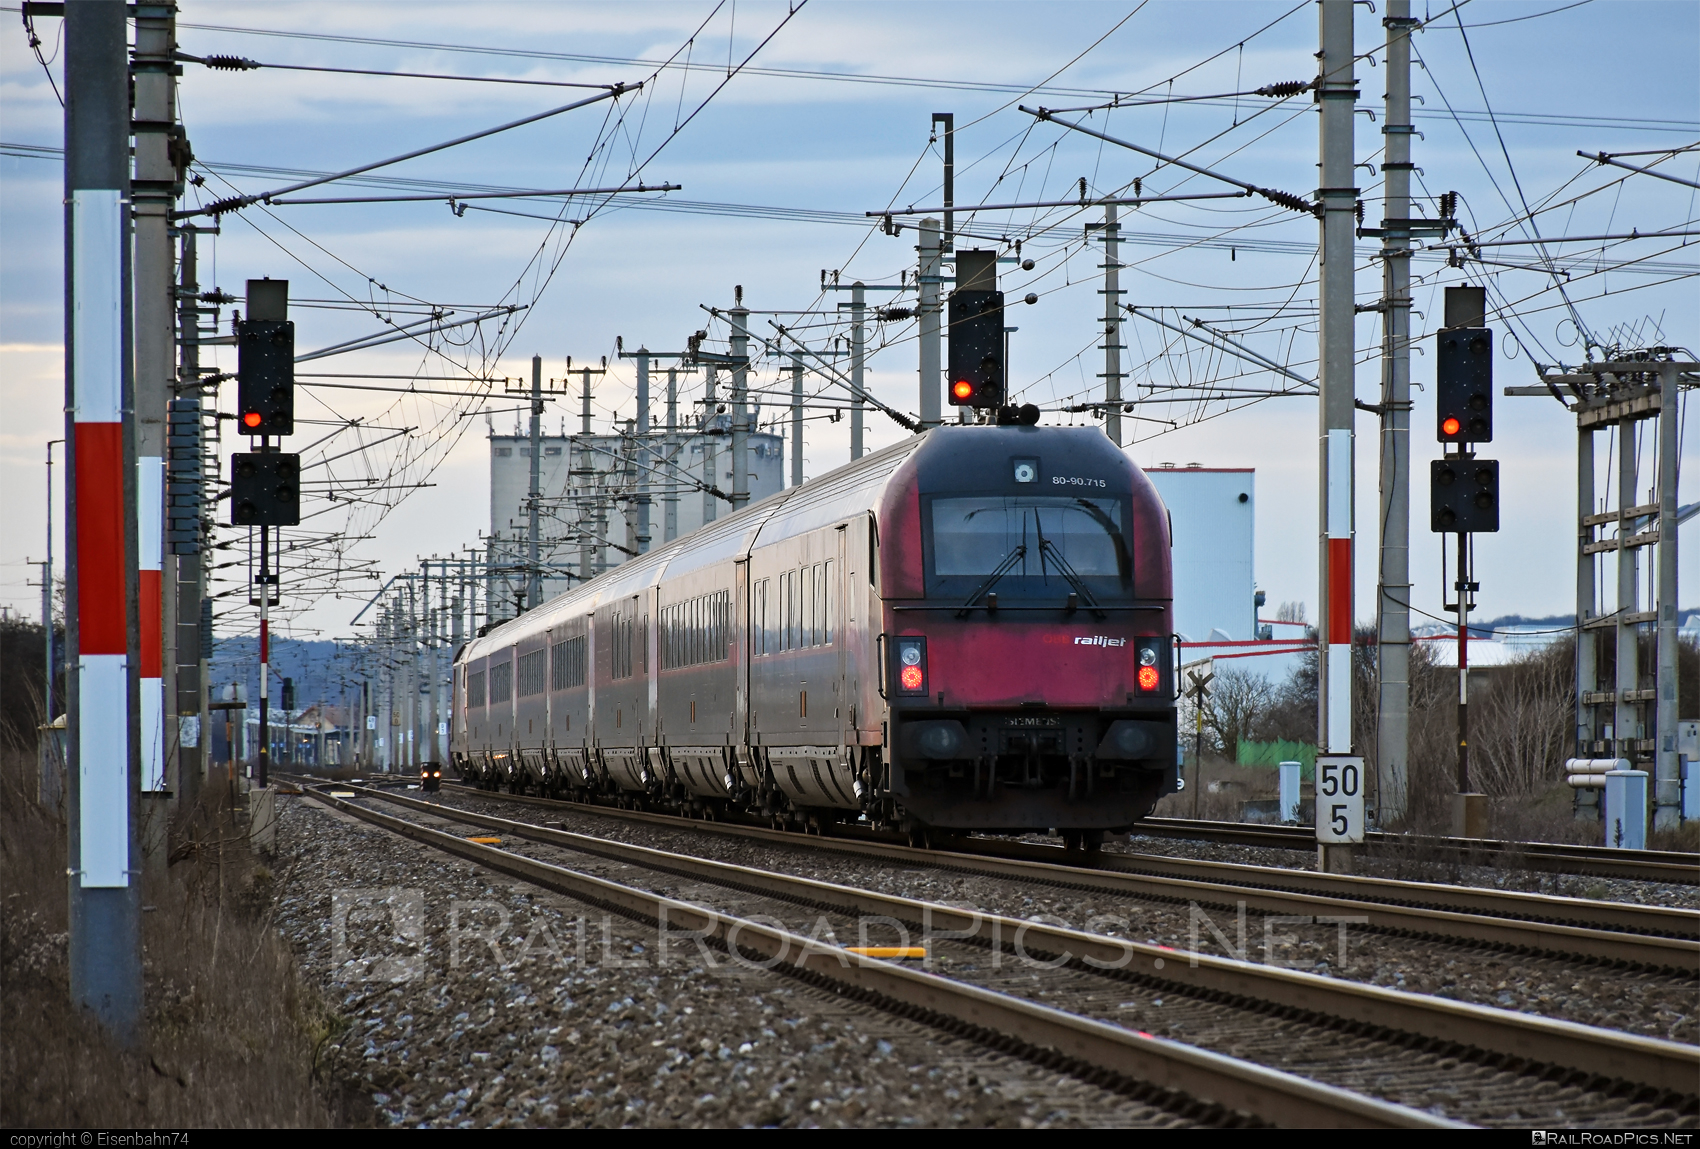 Class A - Afmpz - Siemens Viaggio Comfort control car - 80-90.715 operated by Österreichische Bundesbahnen #afmpz #obb #obbrailjet #osterreichischebundesbahnen #railjet